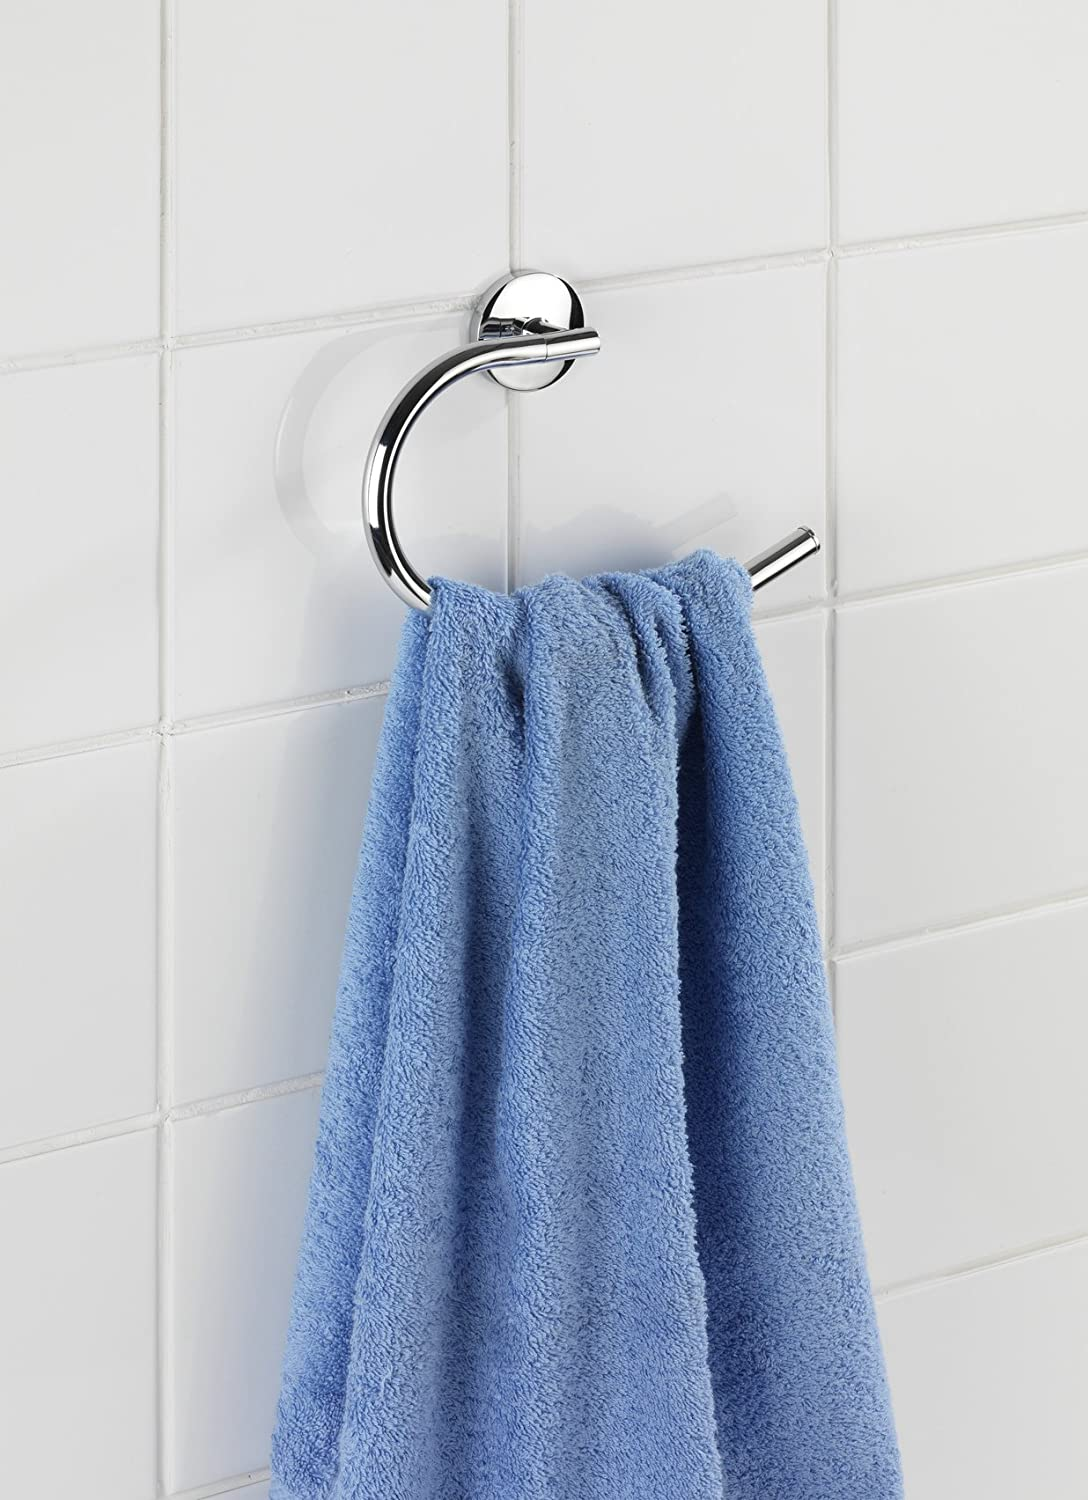 Handtuchring Cuba Glänzend - Handtuchhalter, Zinkdruckguss, 21.5 x 15 x 4 cm, Chrom